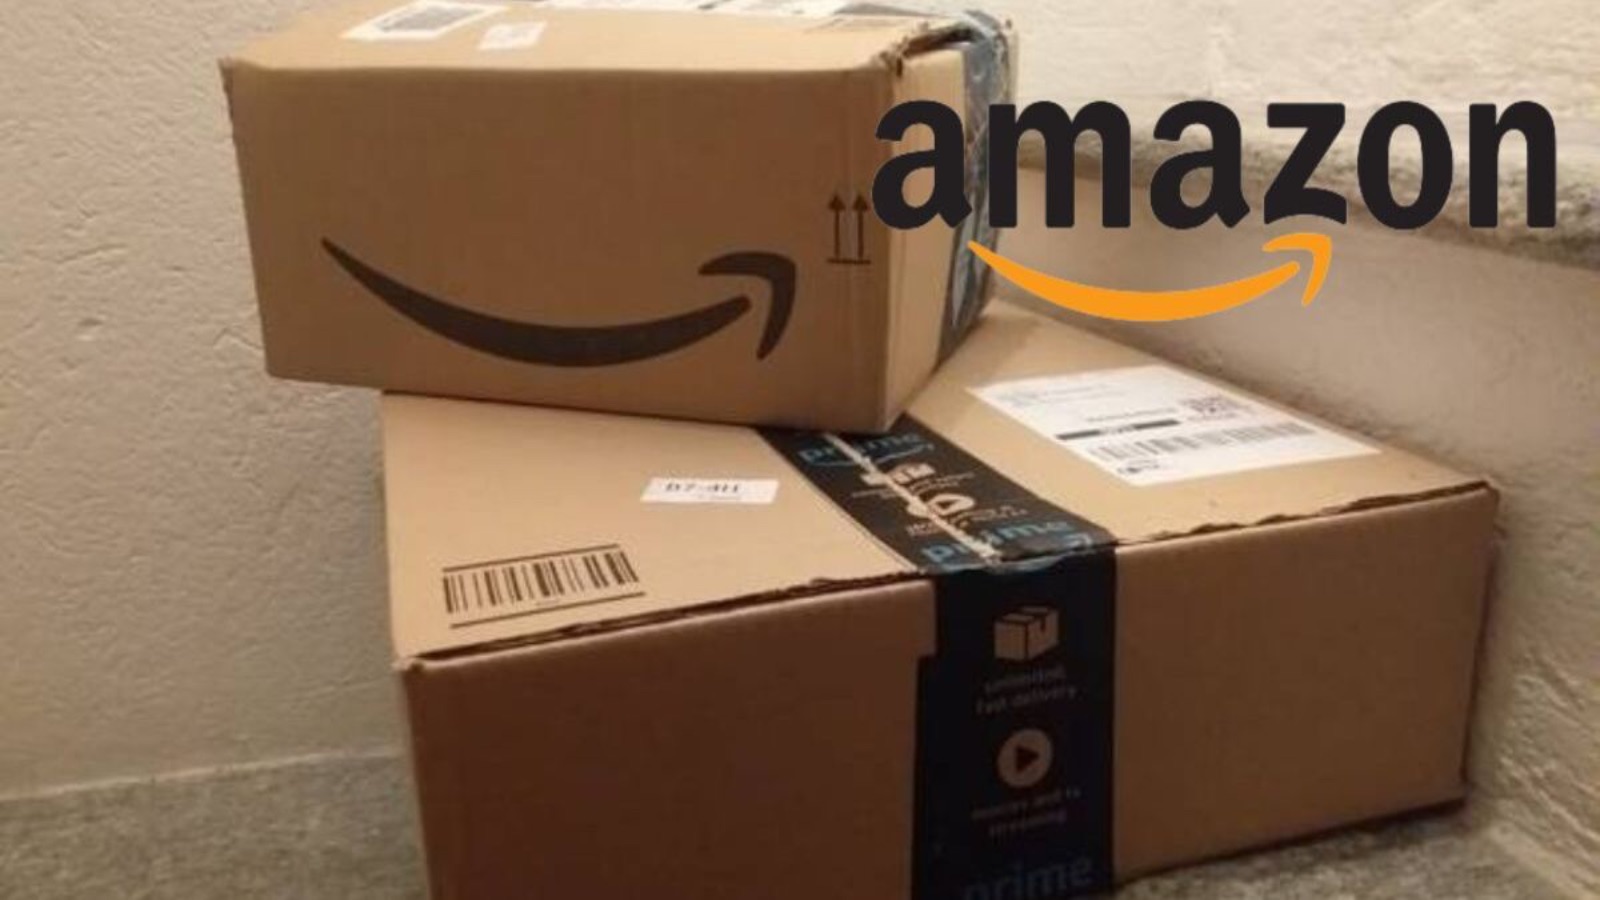 Amazon SHOW, le offerte di Natale al 50% di sconto 